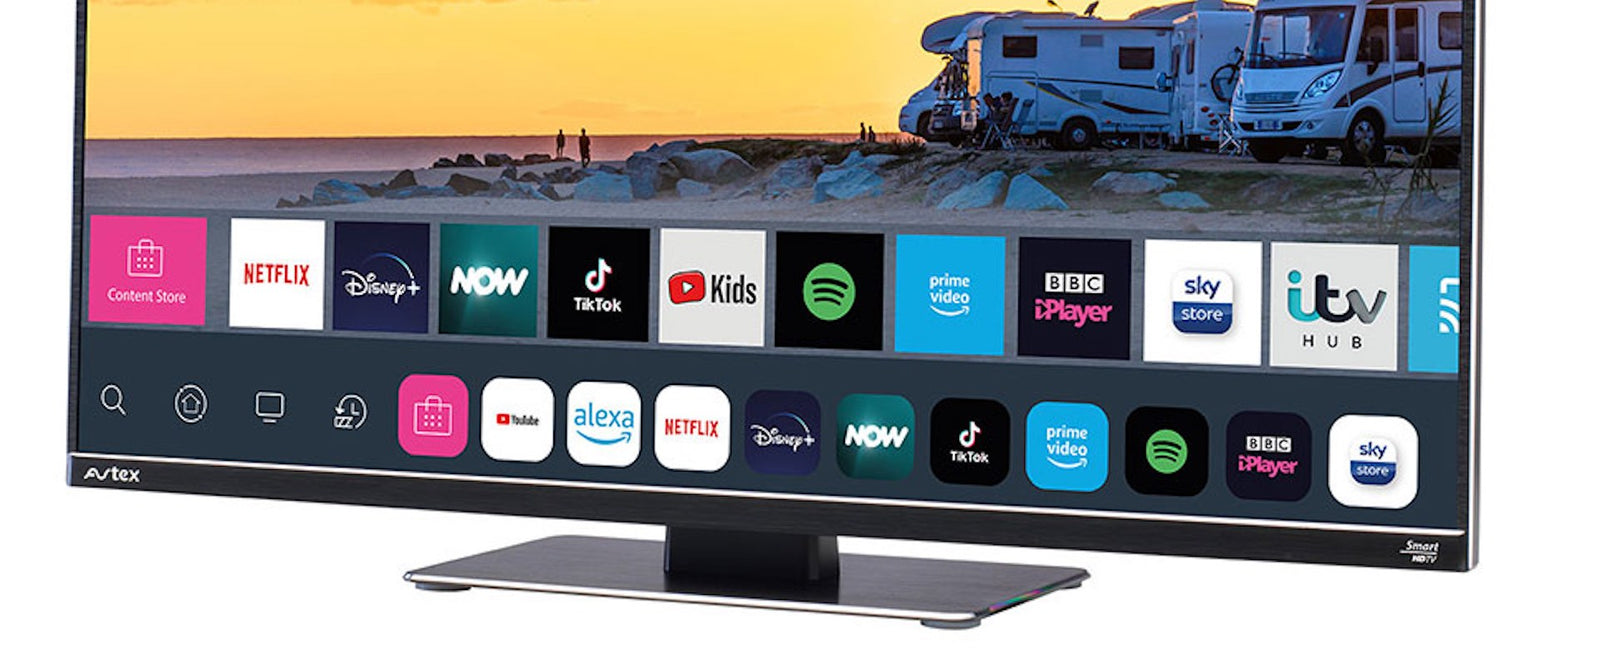 Smarter TVs for Caravanning by Avtex